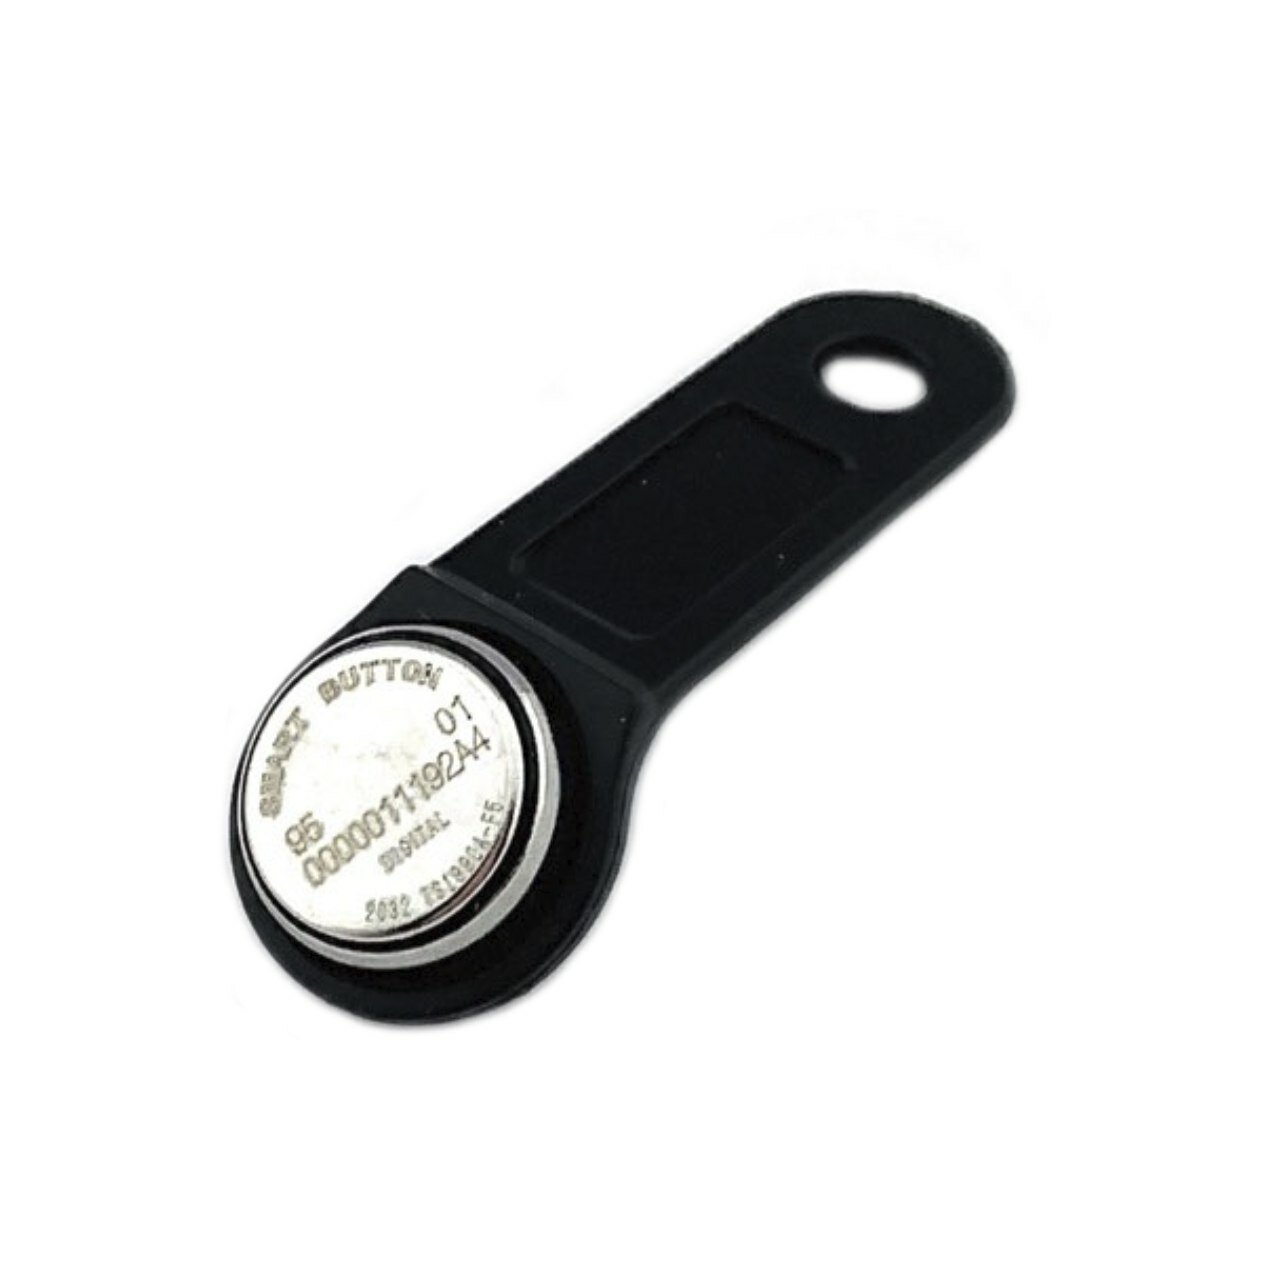 Ключ Touch Memory TM 1990A, неперезаписываемый, цвет черный